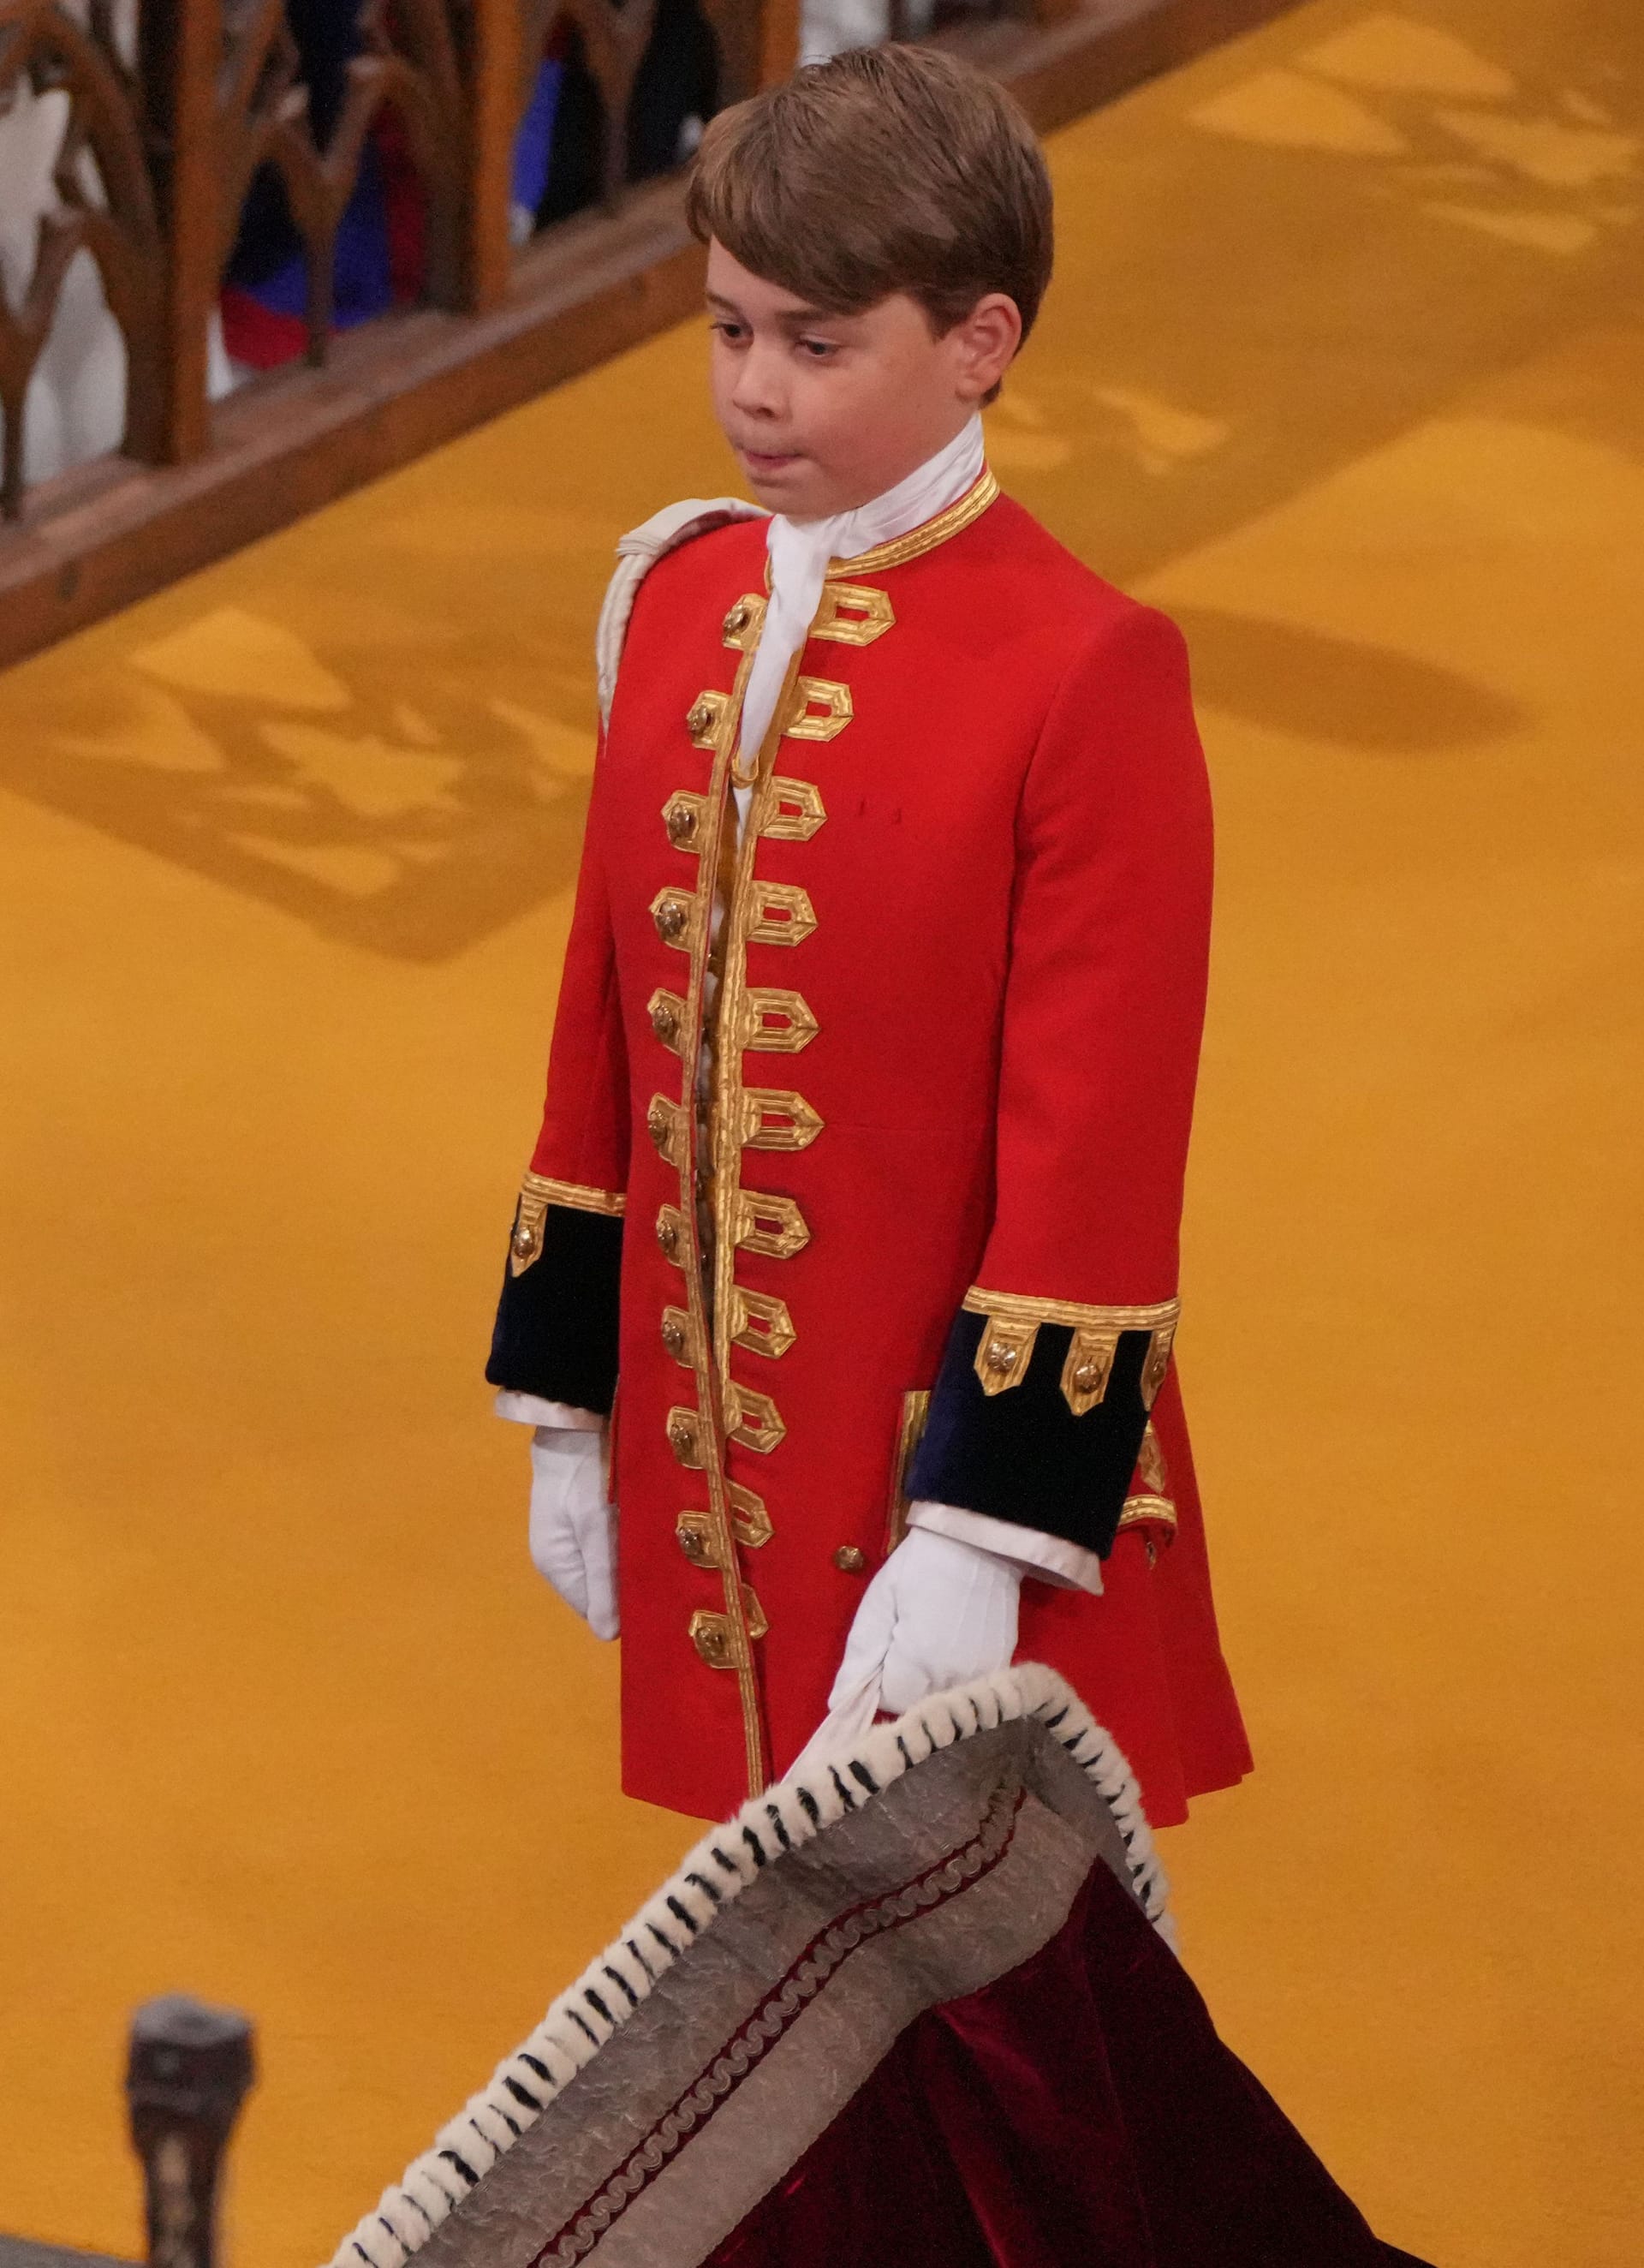 George am 6. Mai 2023 bei der Krönung seines Großvaters, König Charles III., in der Londoner Westminster Abbey.